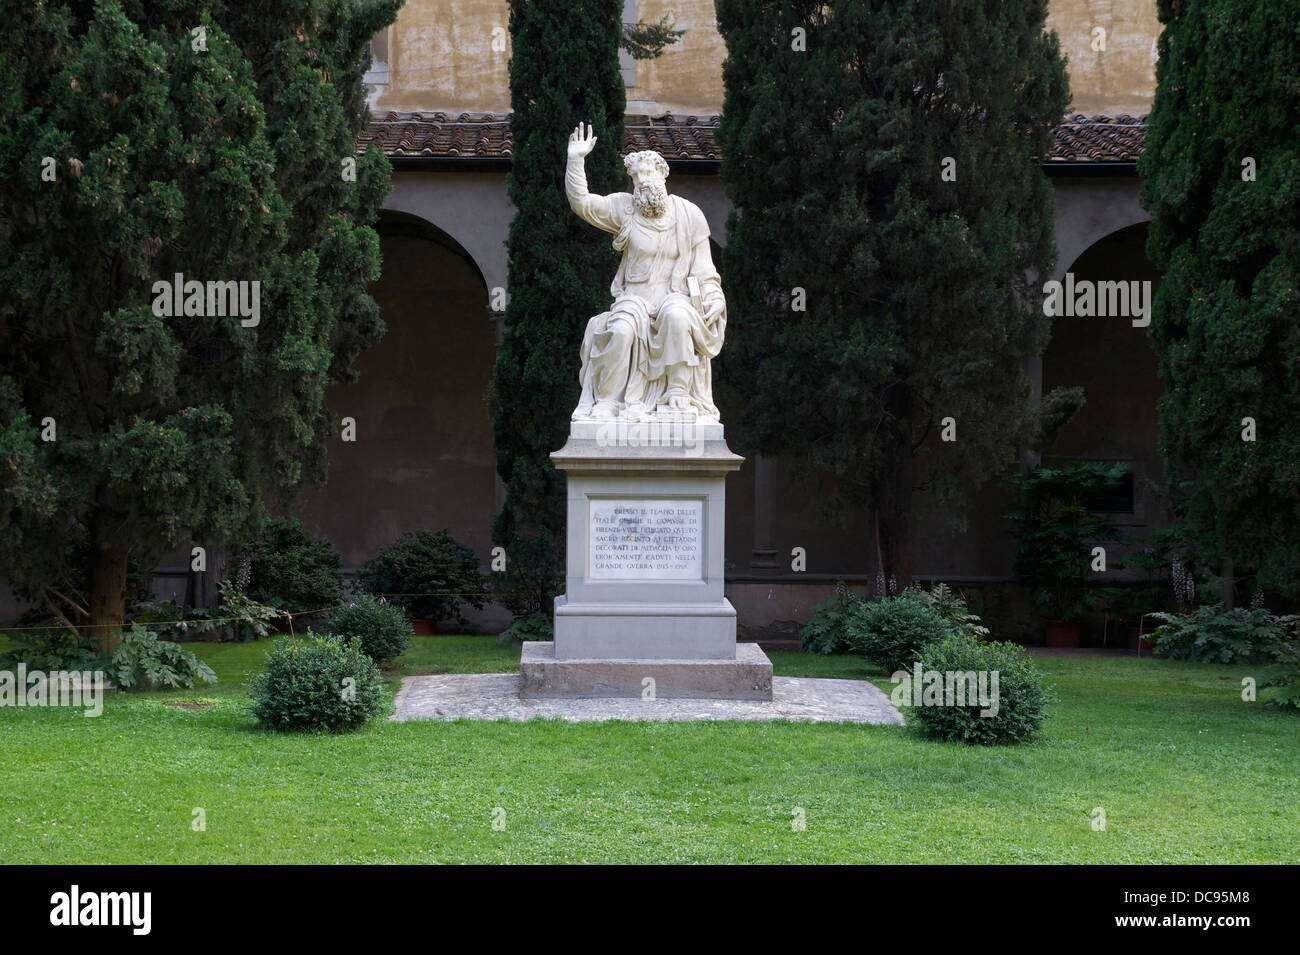 Un monument à la florentins tombés lors de la WW1. Dieu le Père, par Bandinelli. Cloître de Santa Croce, Florence, Italie. Banque D'Images